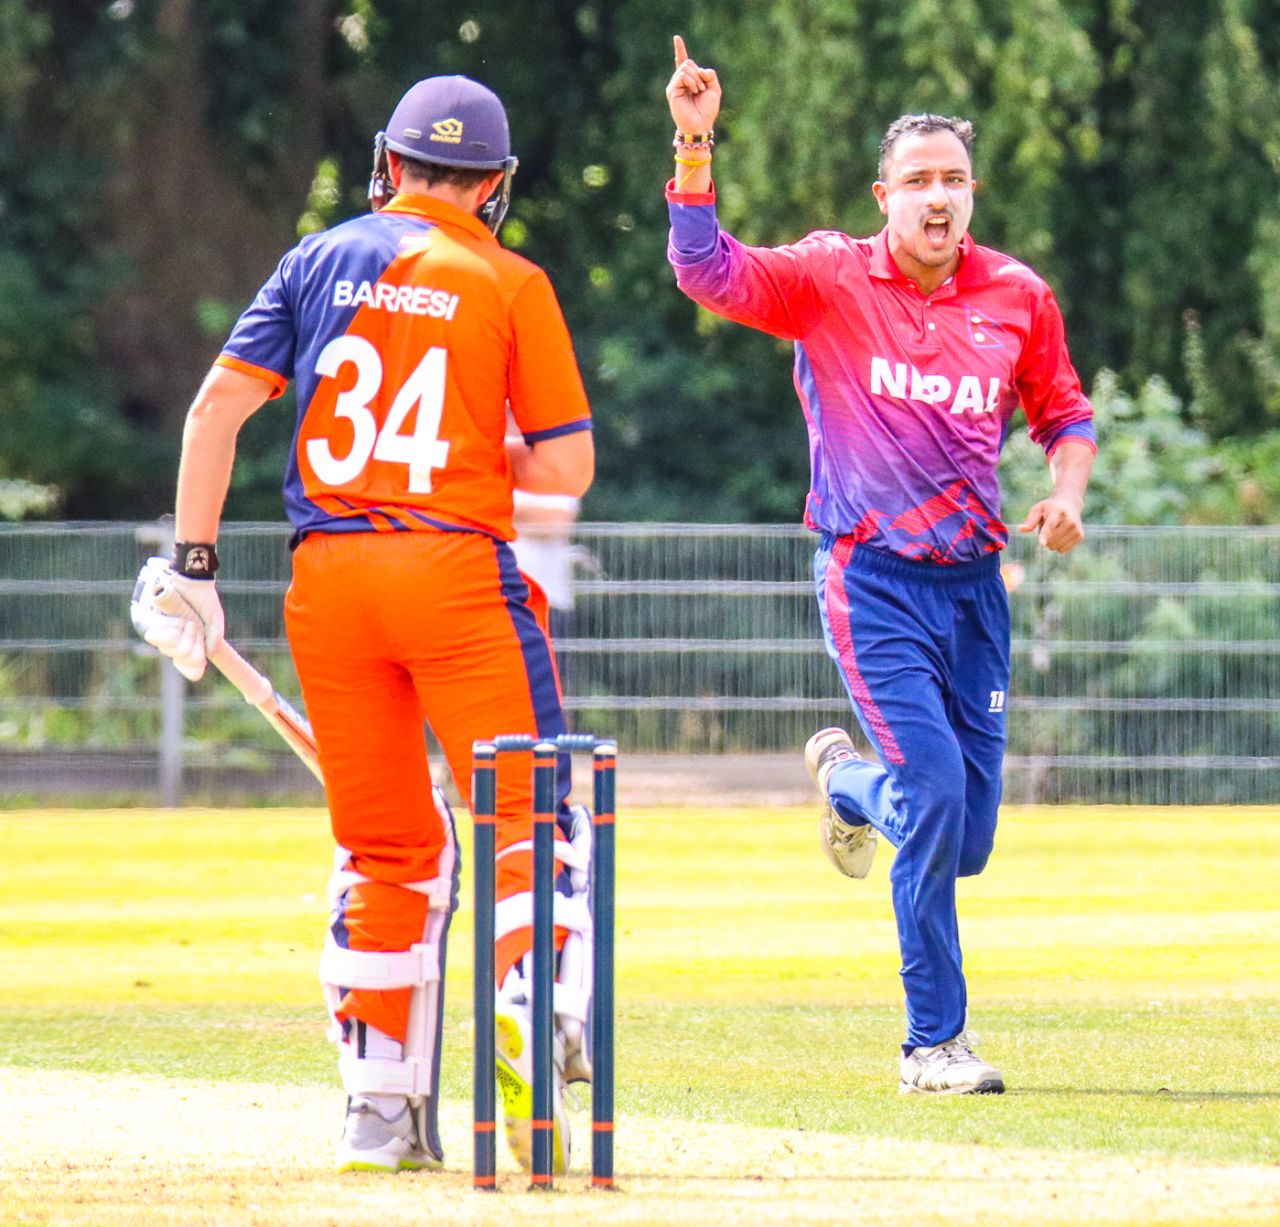 Paras Khadka celebrates after dismissing Wesley Barresi for his second wicket, Netherlands v Nepal, 1st ODI, Amstelveen, August 1, 2018